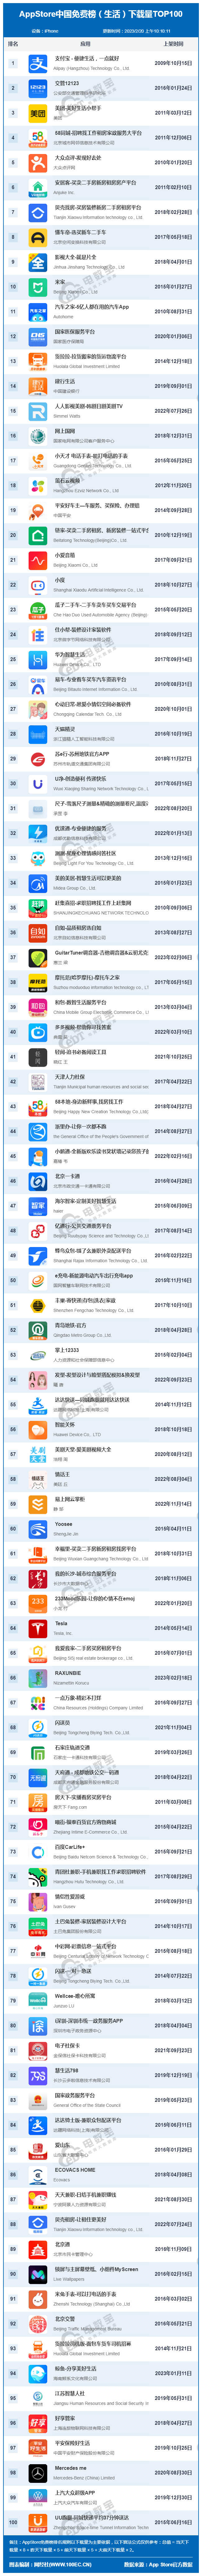 恋小帮破解版 下载苹果:2月AppStore中国免费榜(生活)TOP100：支付宝 交管12123 美团前三